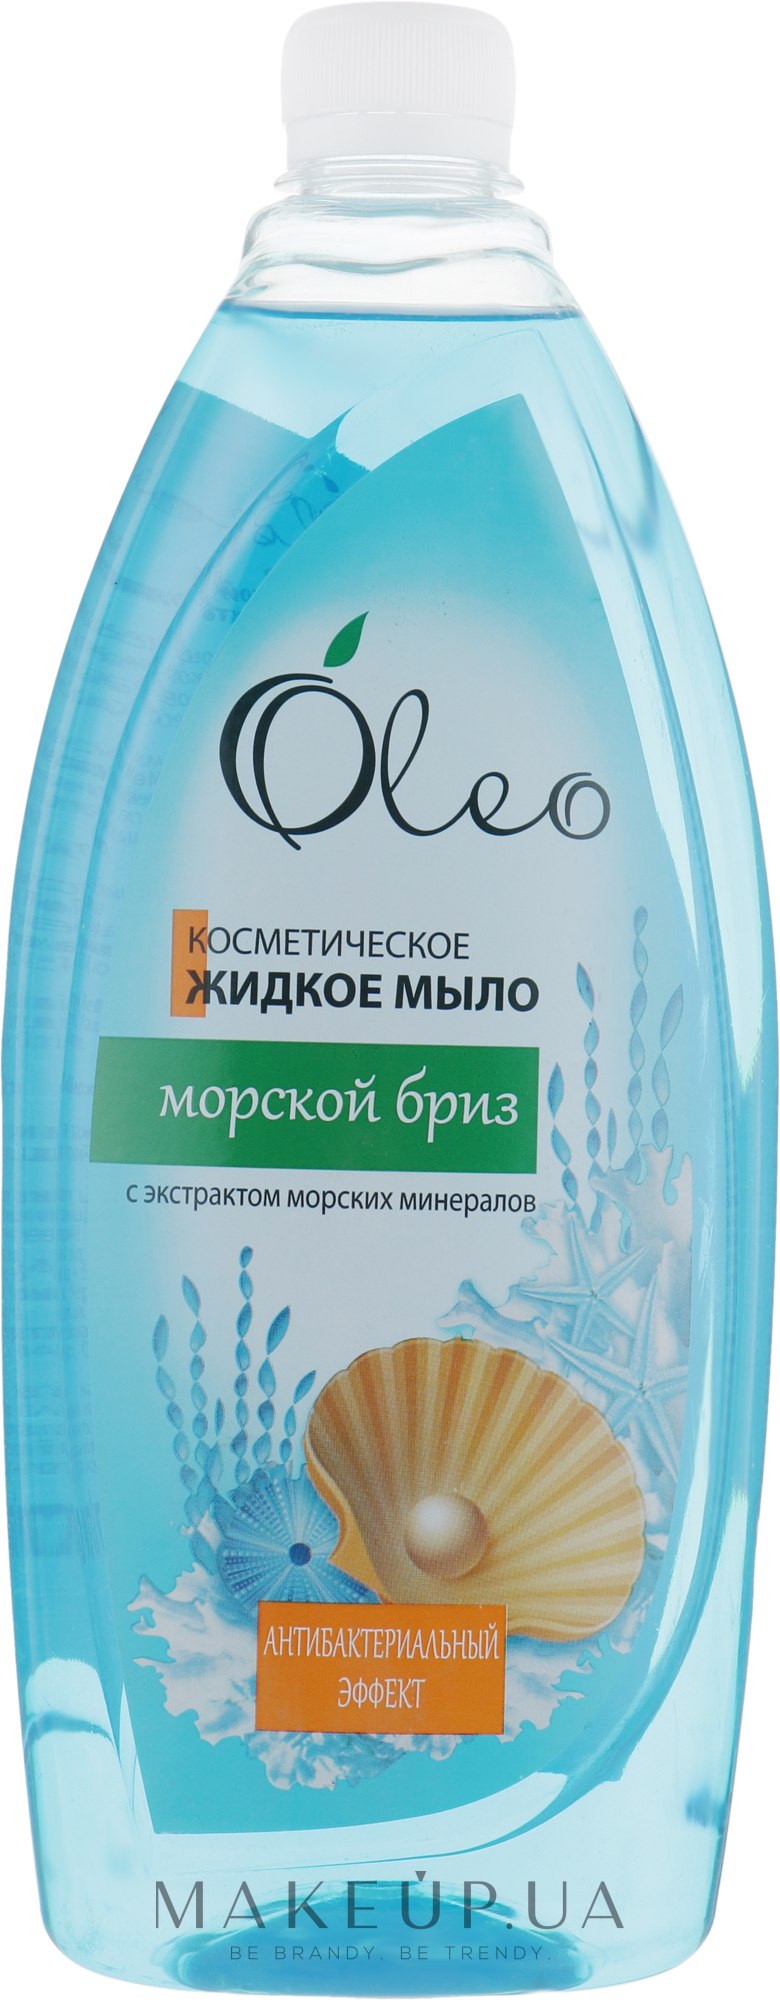 Косметическое жидкое мыло "Морской бриз" - Oleo — фото 1000ml